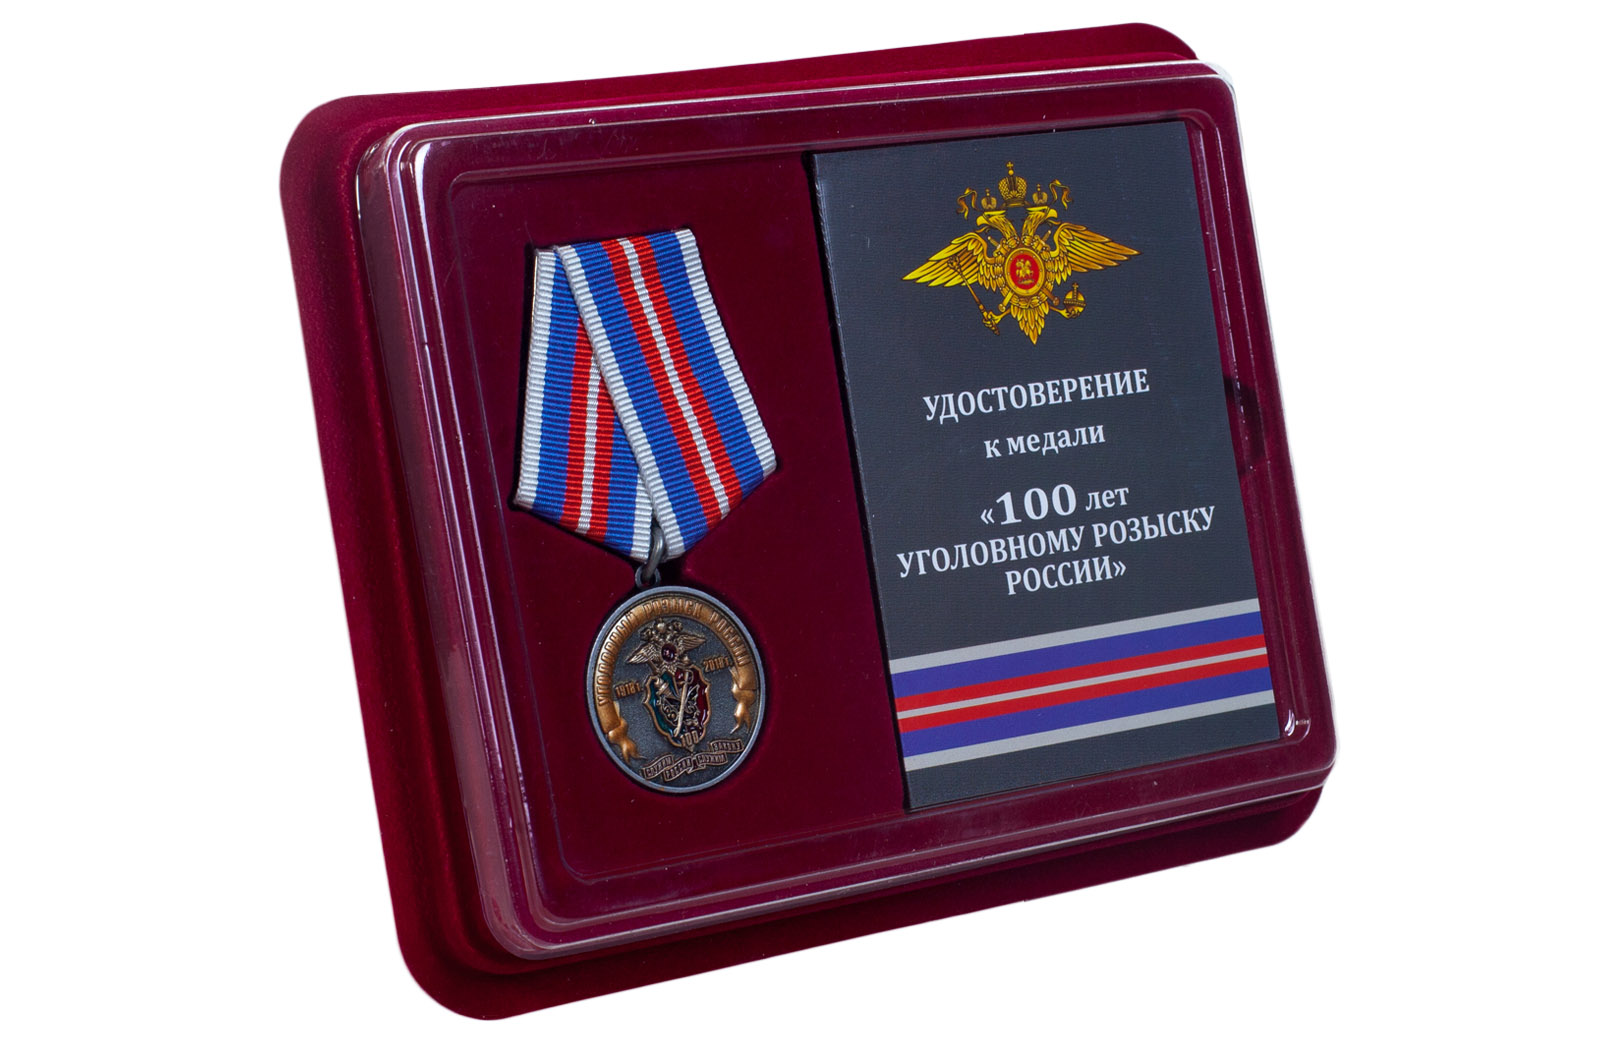 Купить юбилейную медаль 100 лет Уголовному розыску России 1918-2018 с доставкой